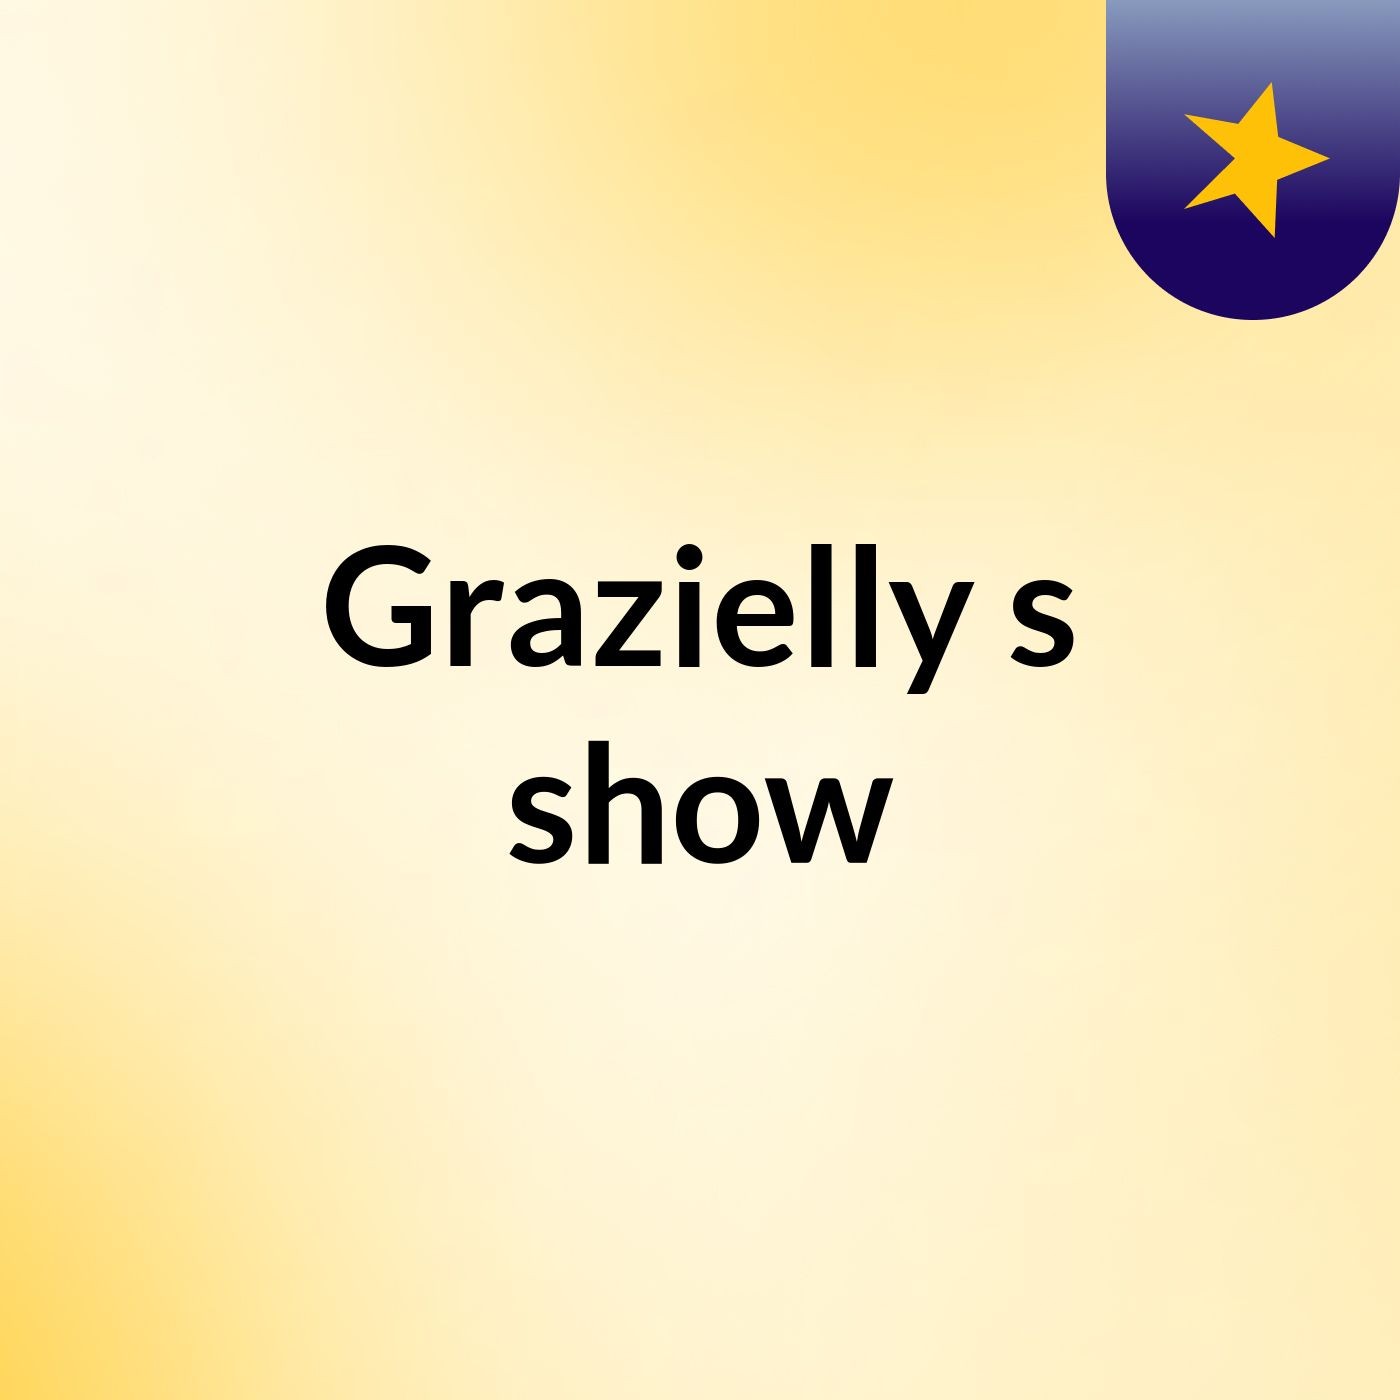 Grazielly's show